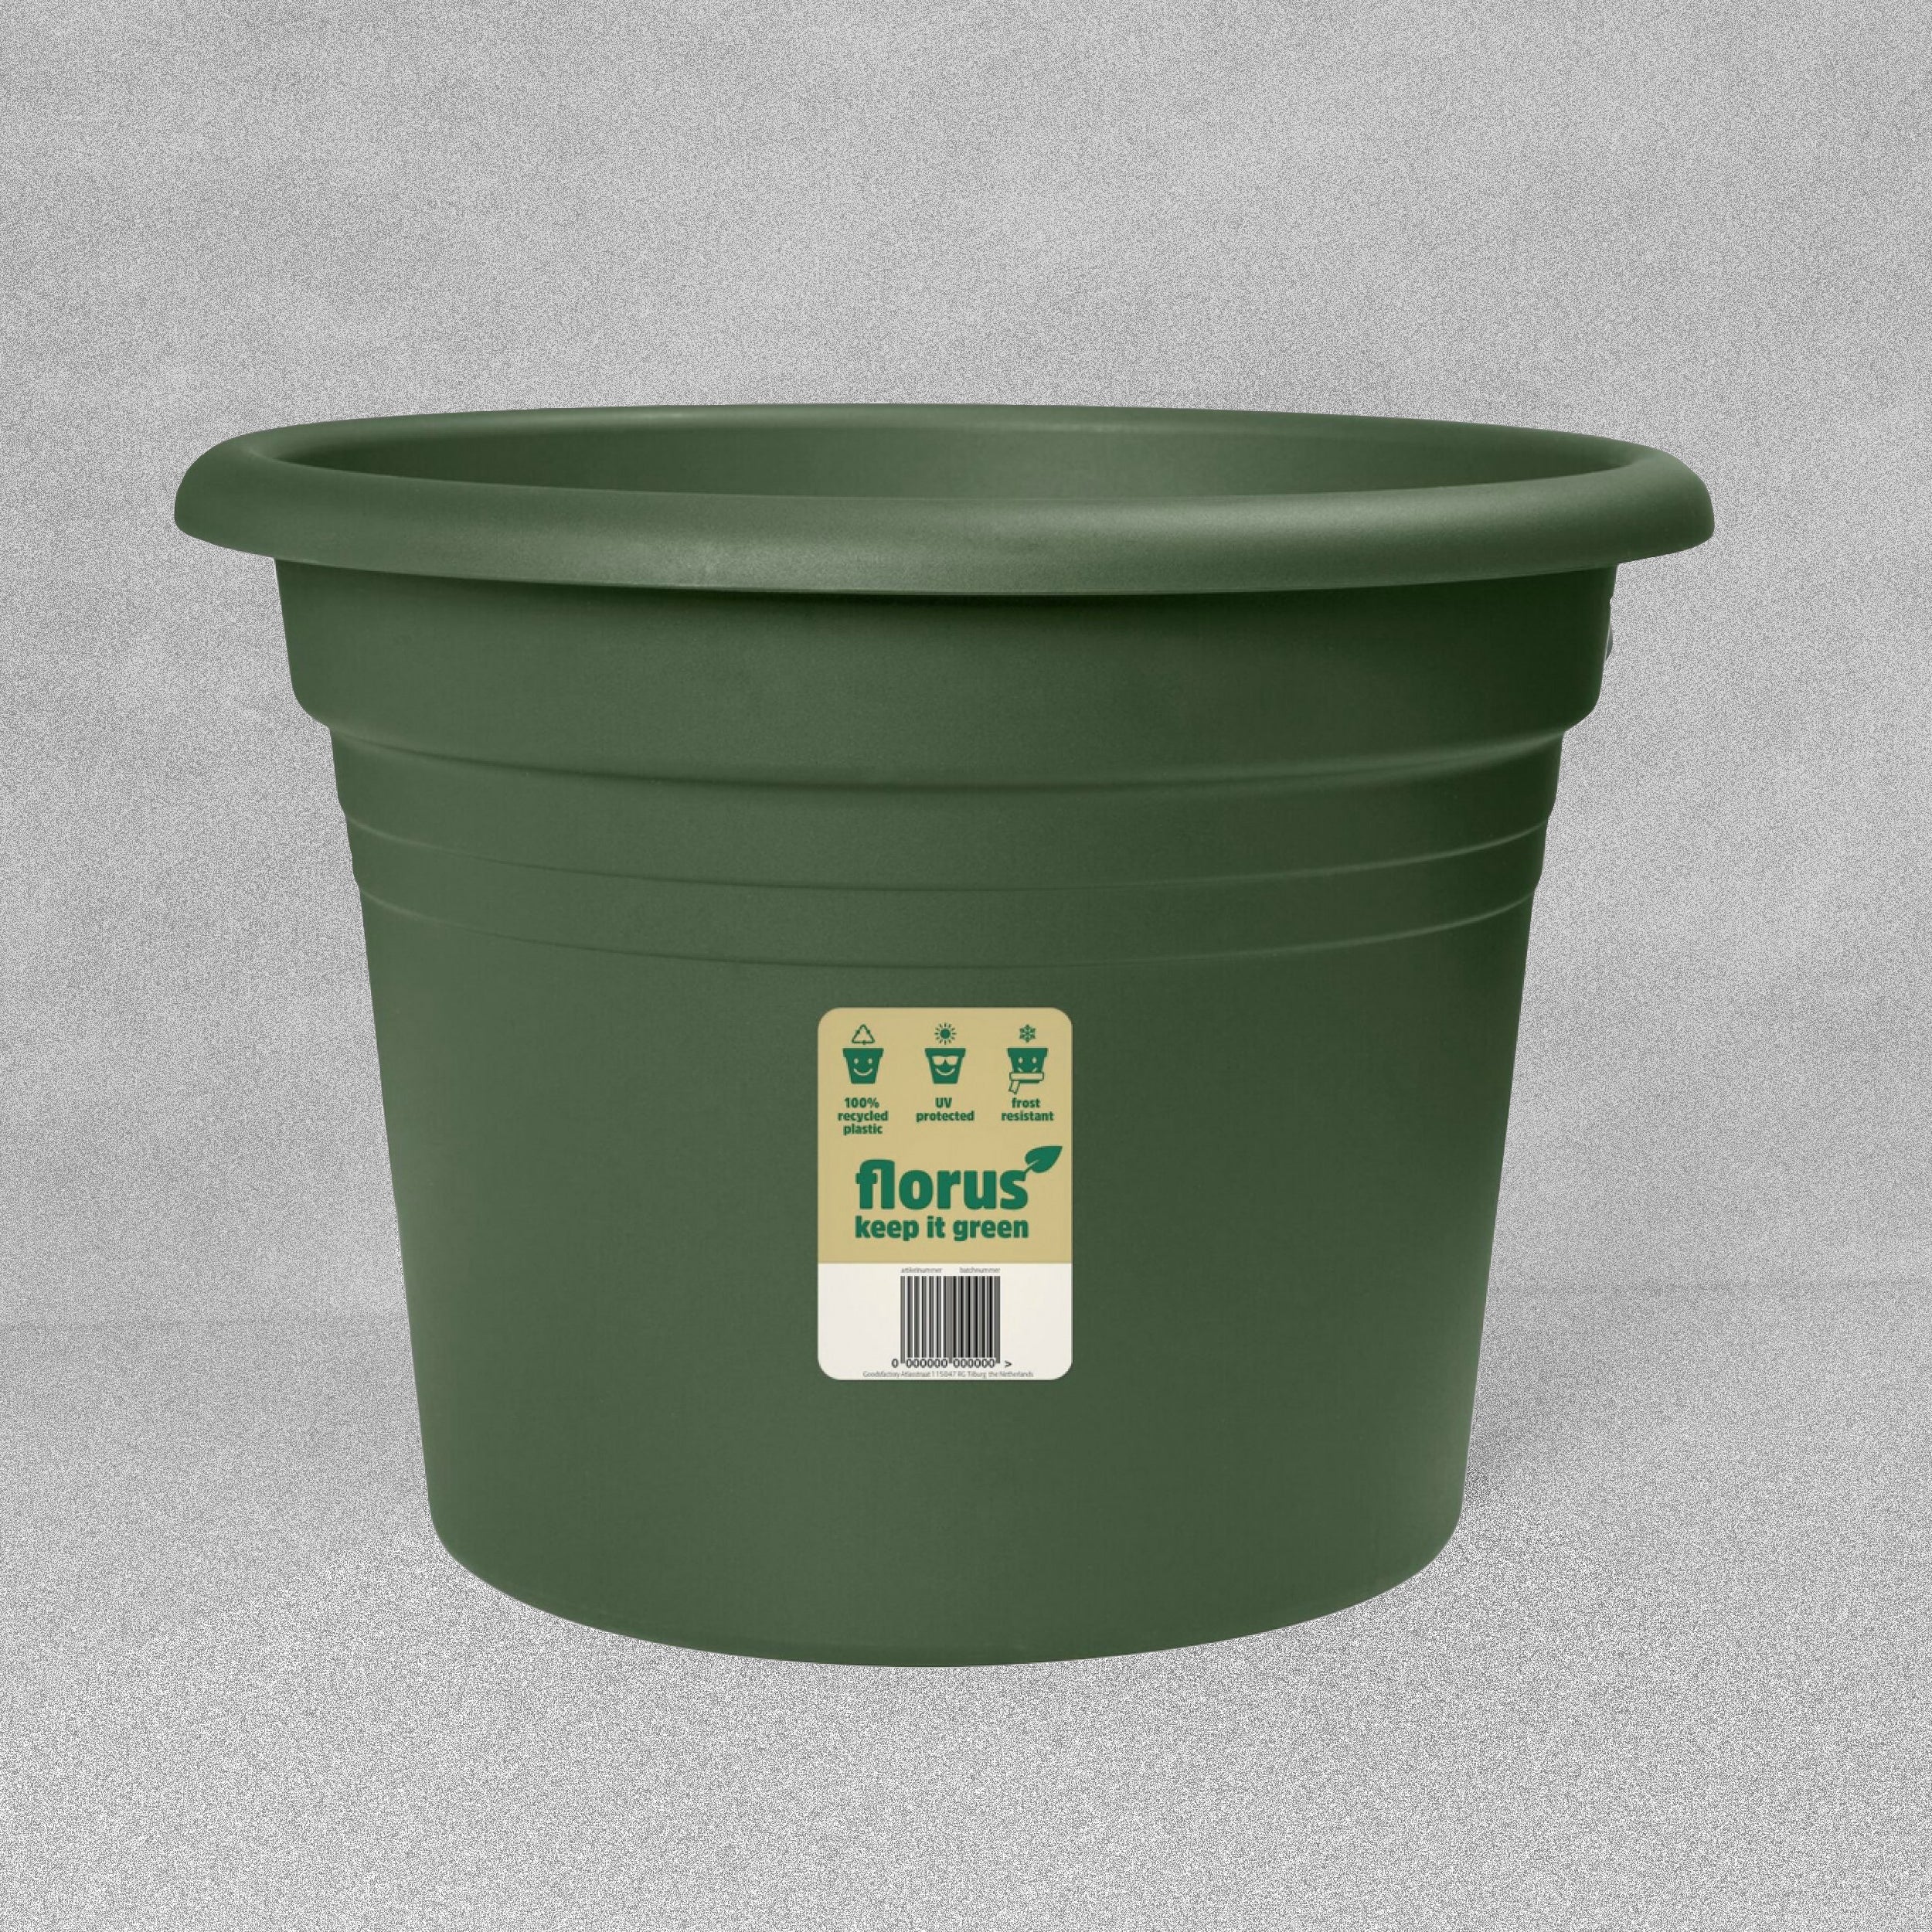 Florus 35cm Plant Pot - Green